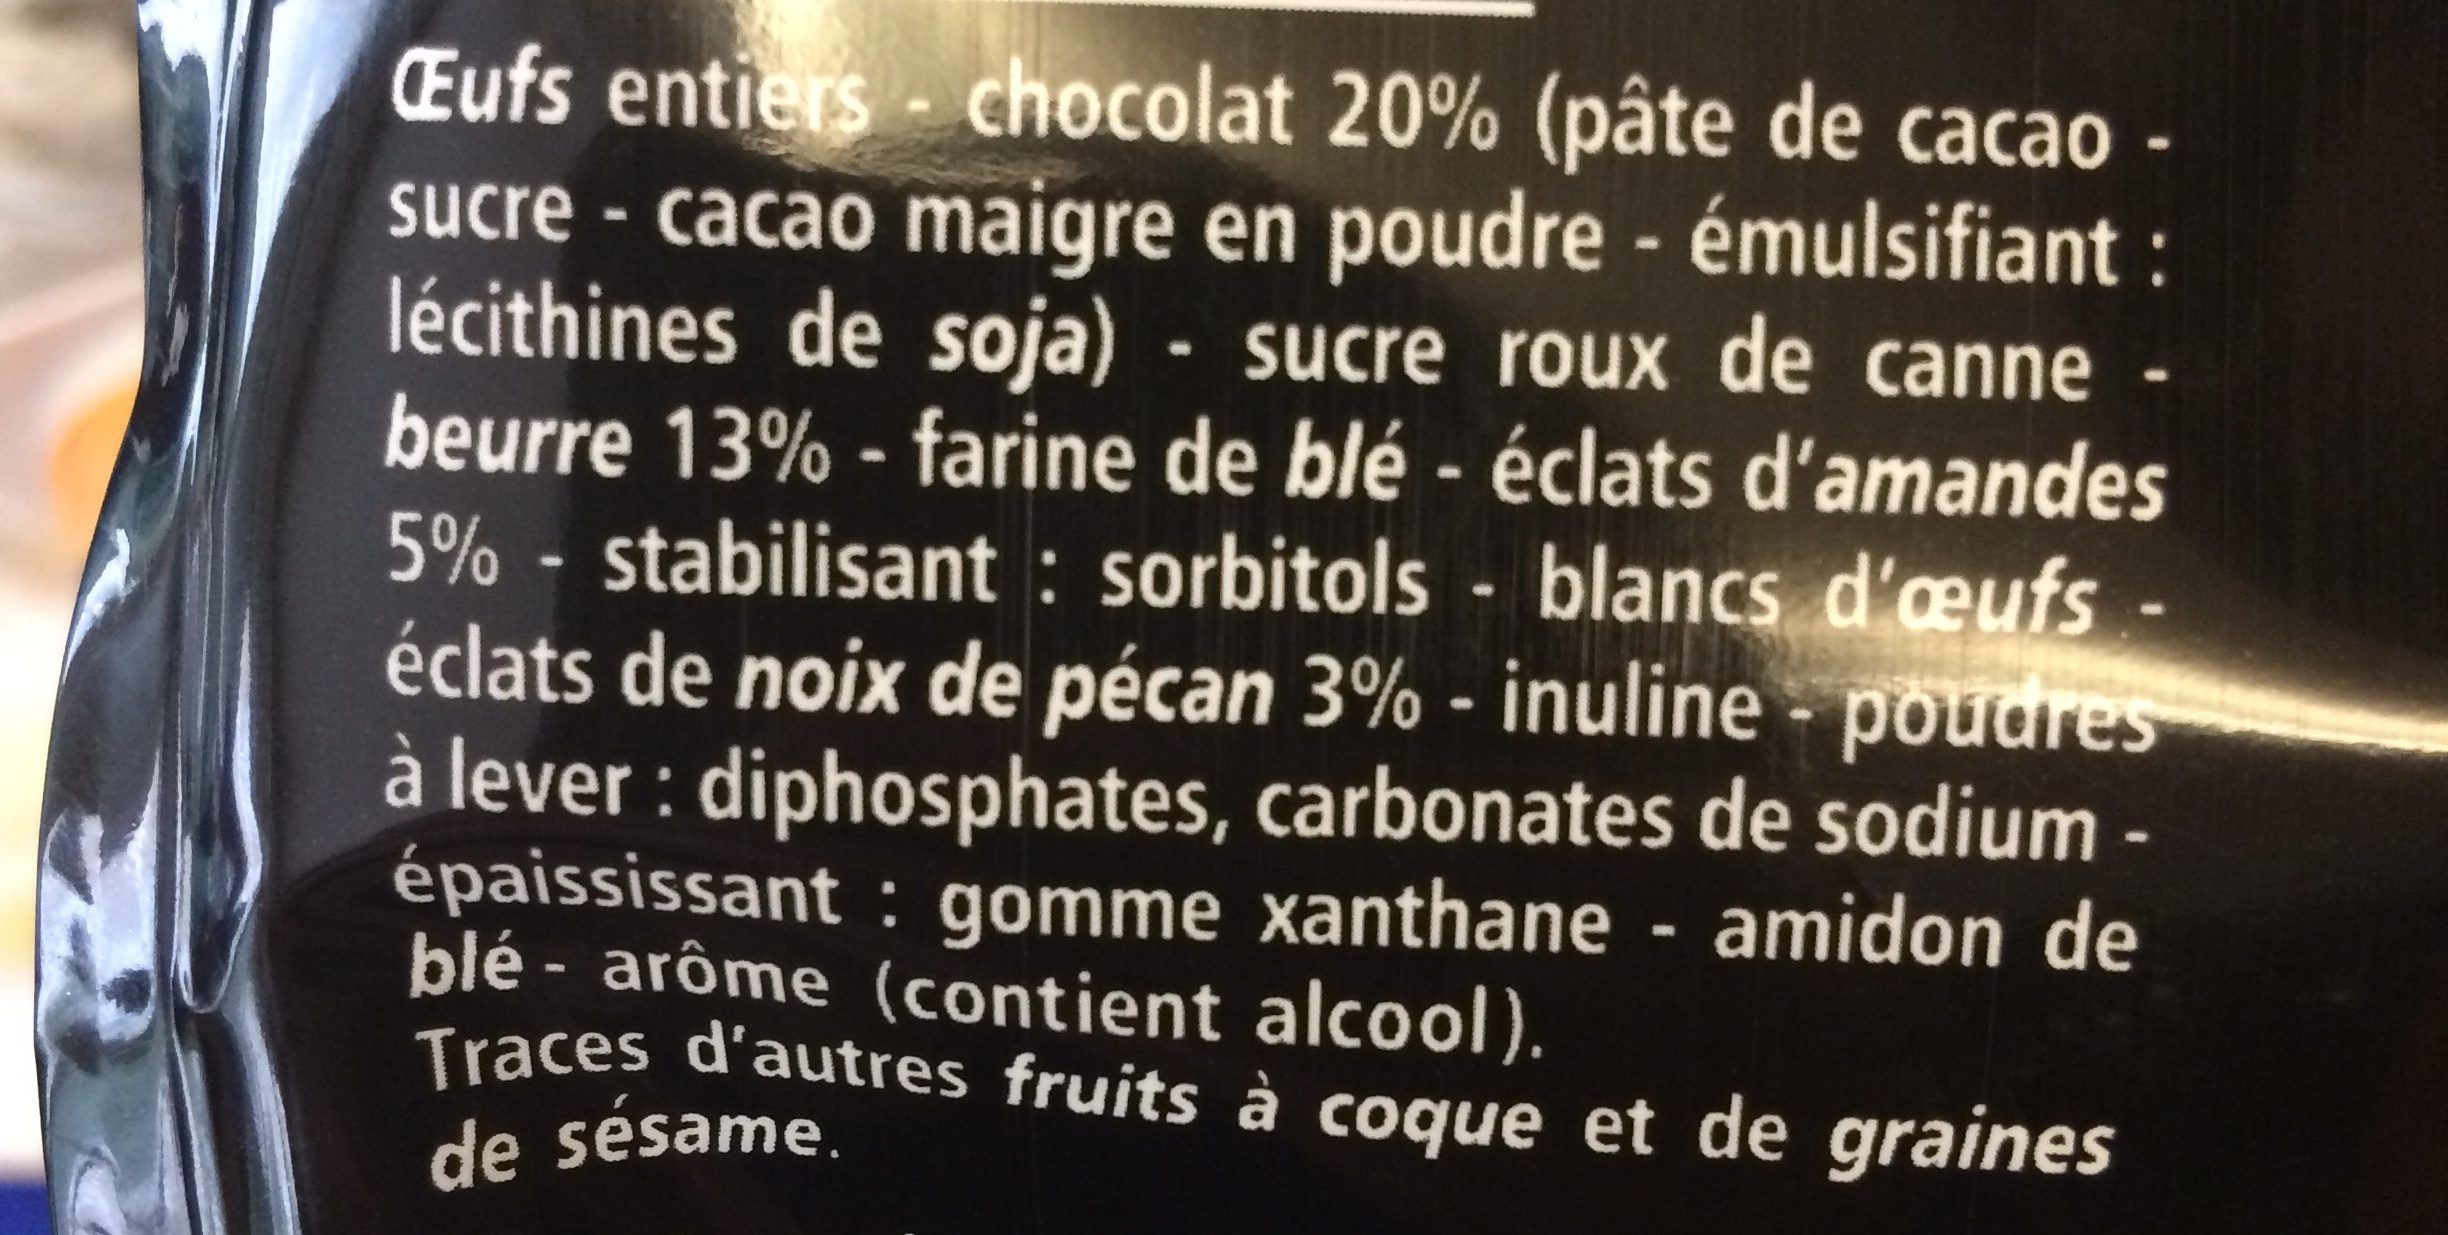 MINI FONDANT AU CHOCOLAT ET AUX ECLATS D'AMANDES et NOIX DE PECAN - Ingredients - fr